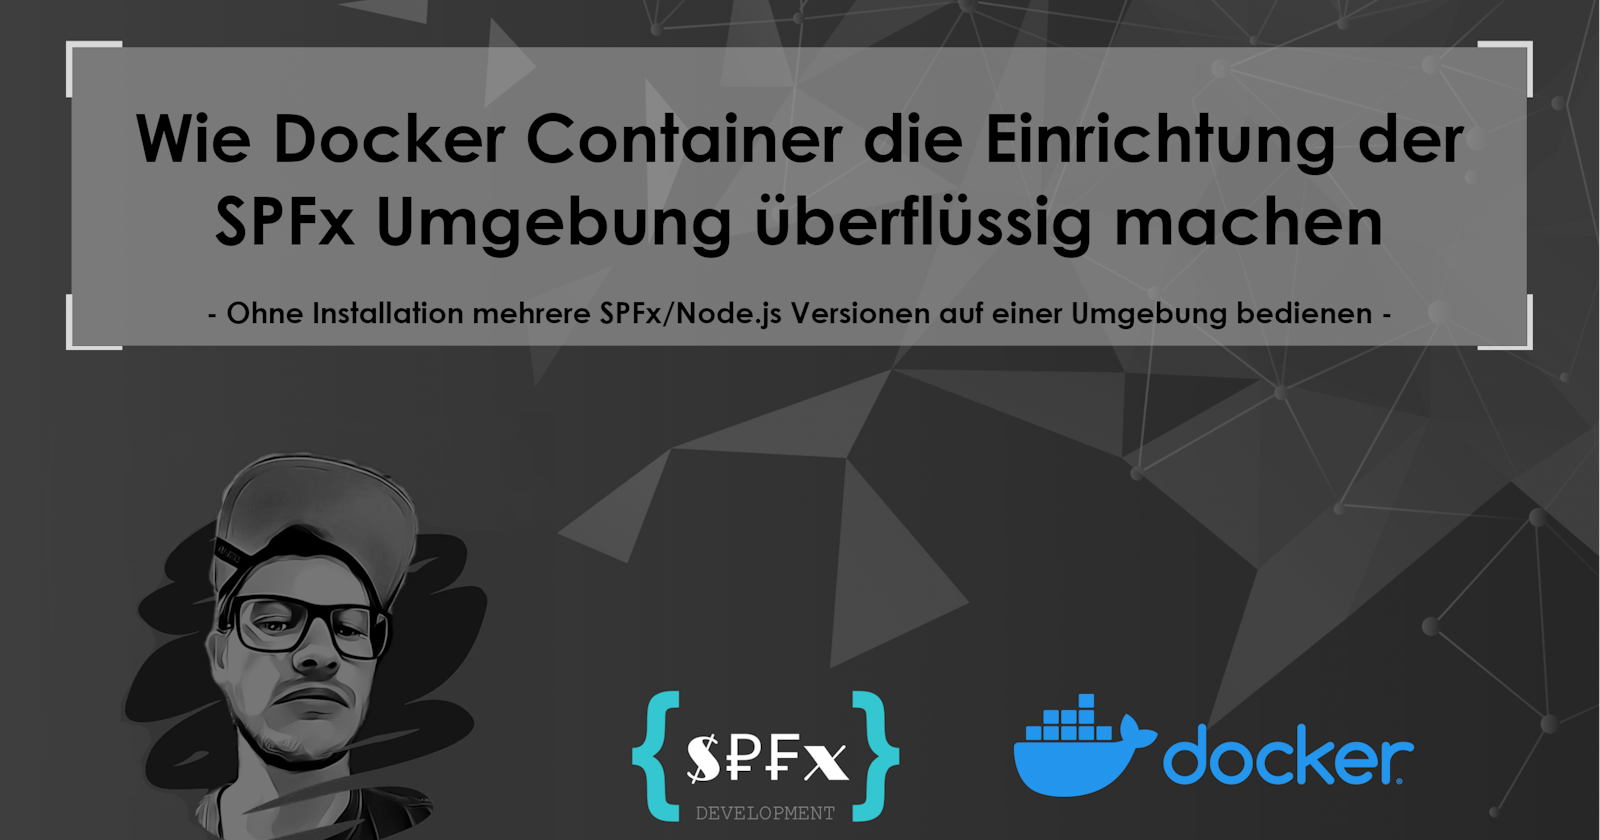 Wie Docker Container die Einrichtung der SPFx Umgebung überflüssig machen